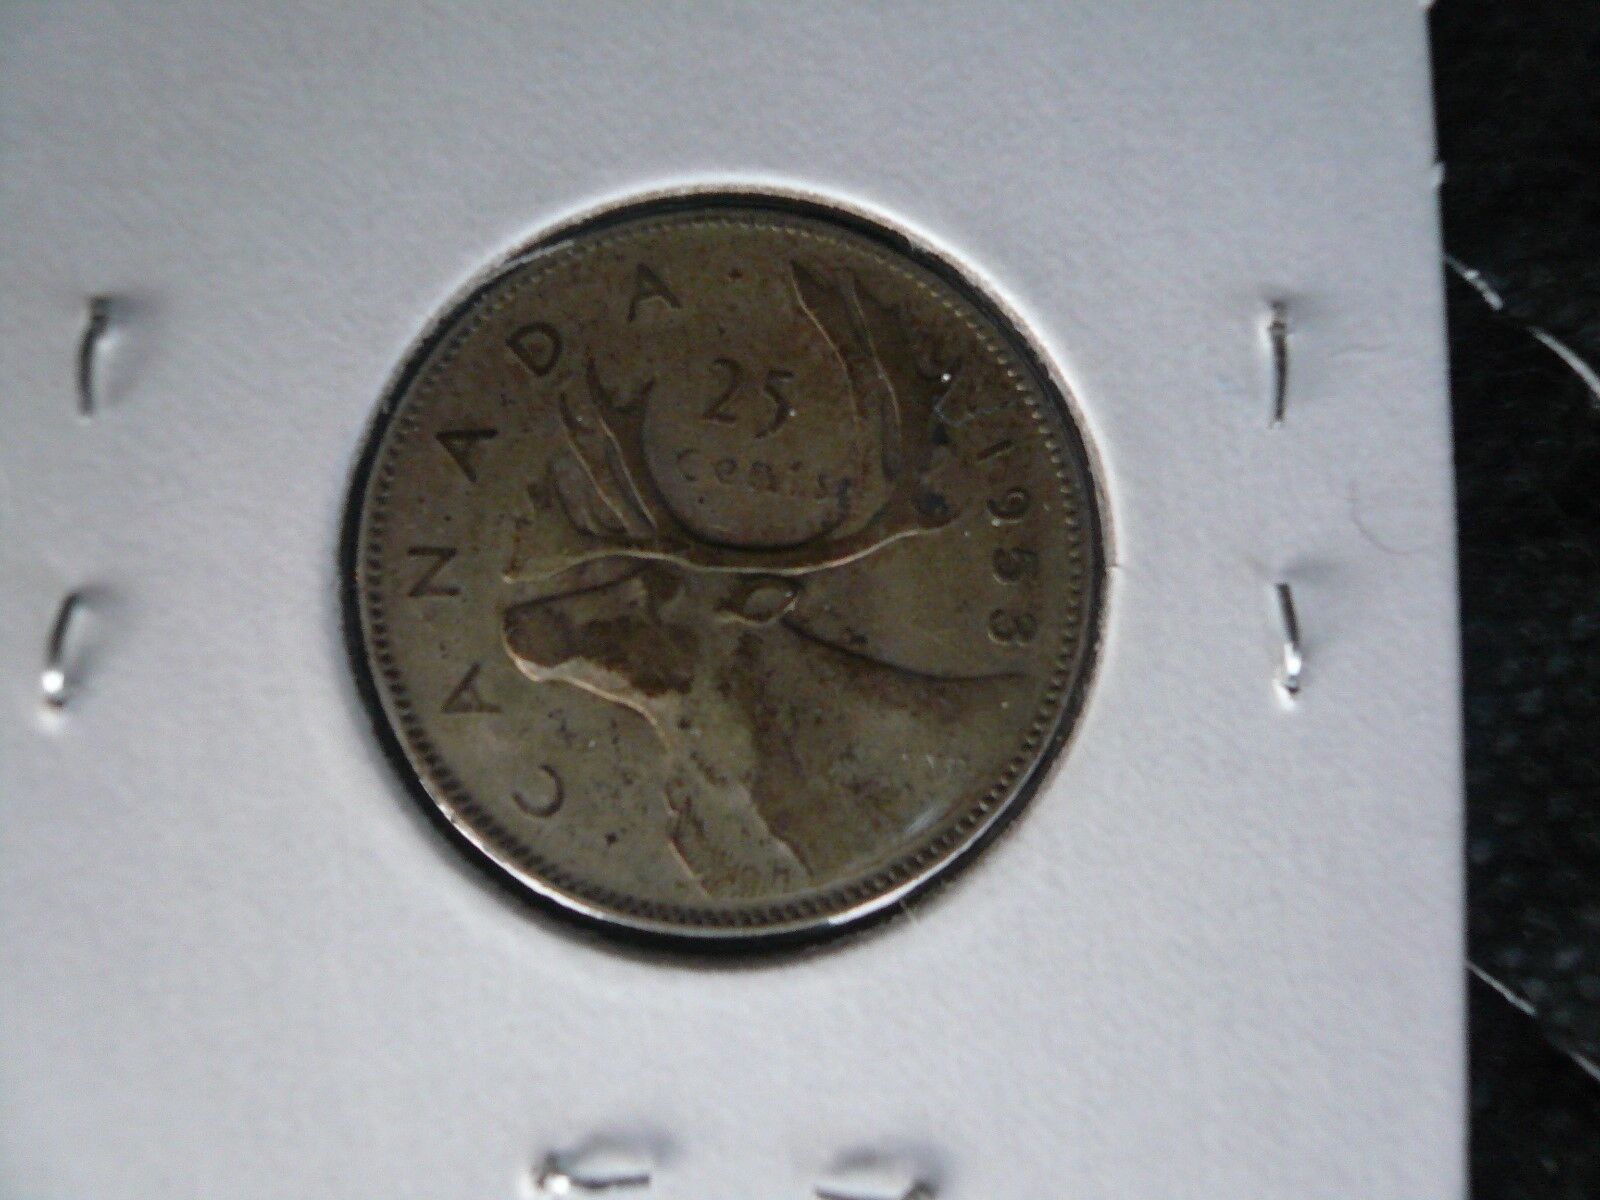 1953  CANADA 25 CENTS "LARGE DATE 1953" ELIZABETH II 80% SILVER SET OF 2 COINS Без бренда - фотография #4